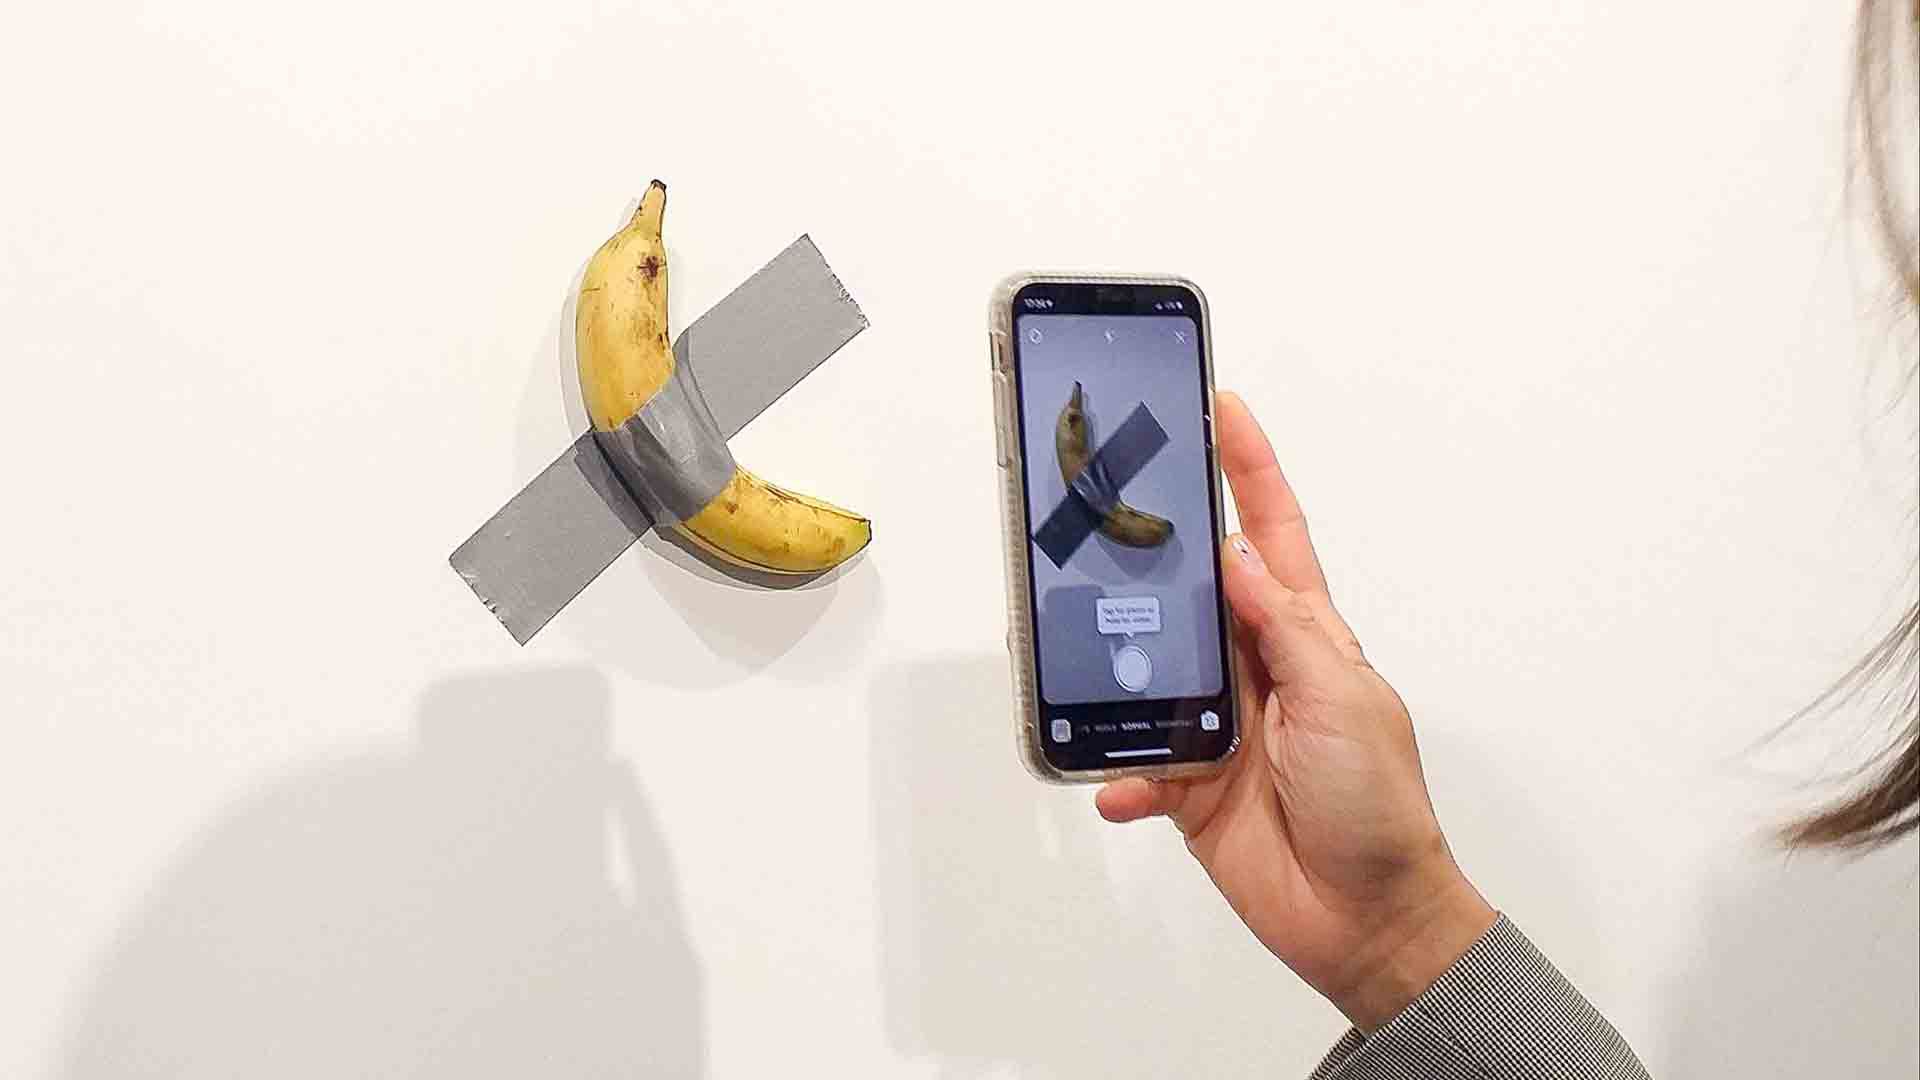 "Comediante", del artista italiano Maurizio Cattelan: una banana pegada a la pared con un trozo de cinta plástica se vendió por 120.000 dólares (Télam)